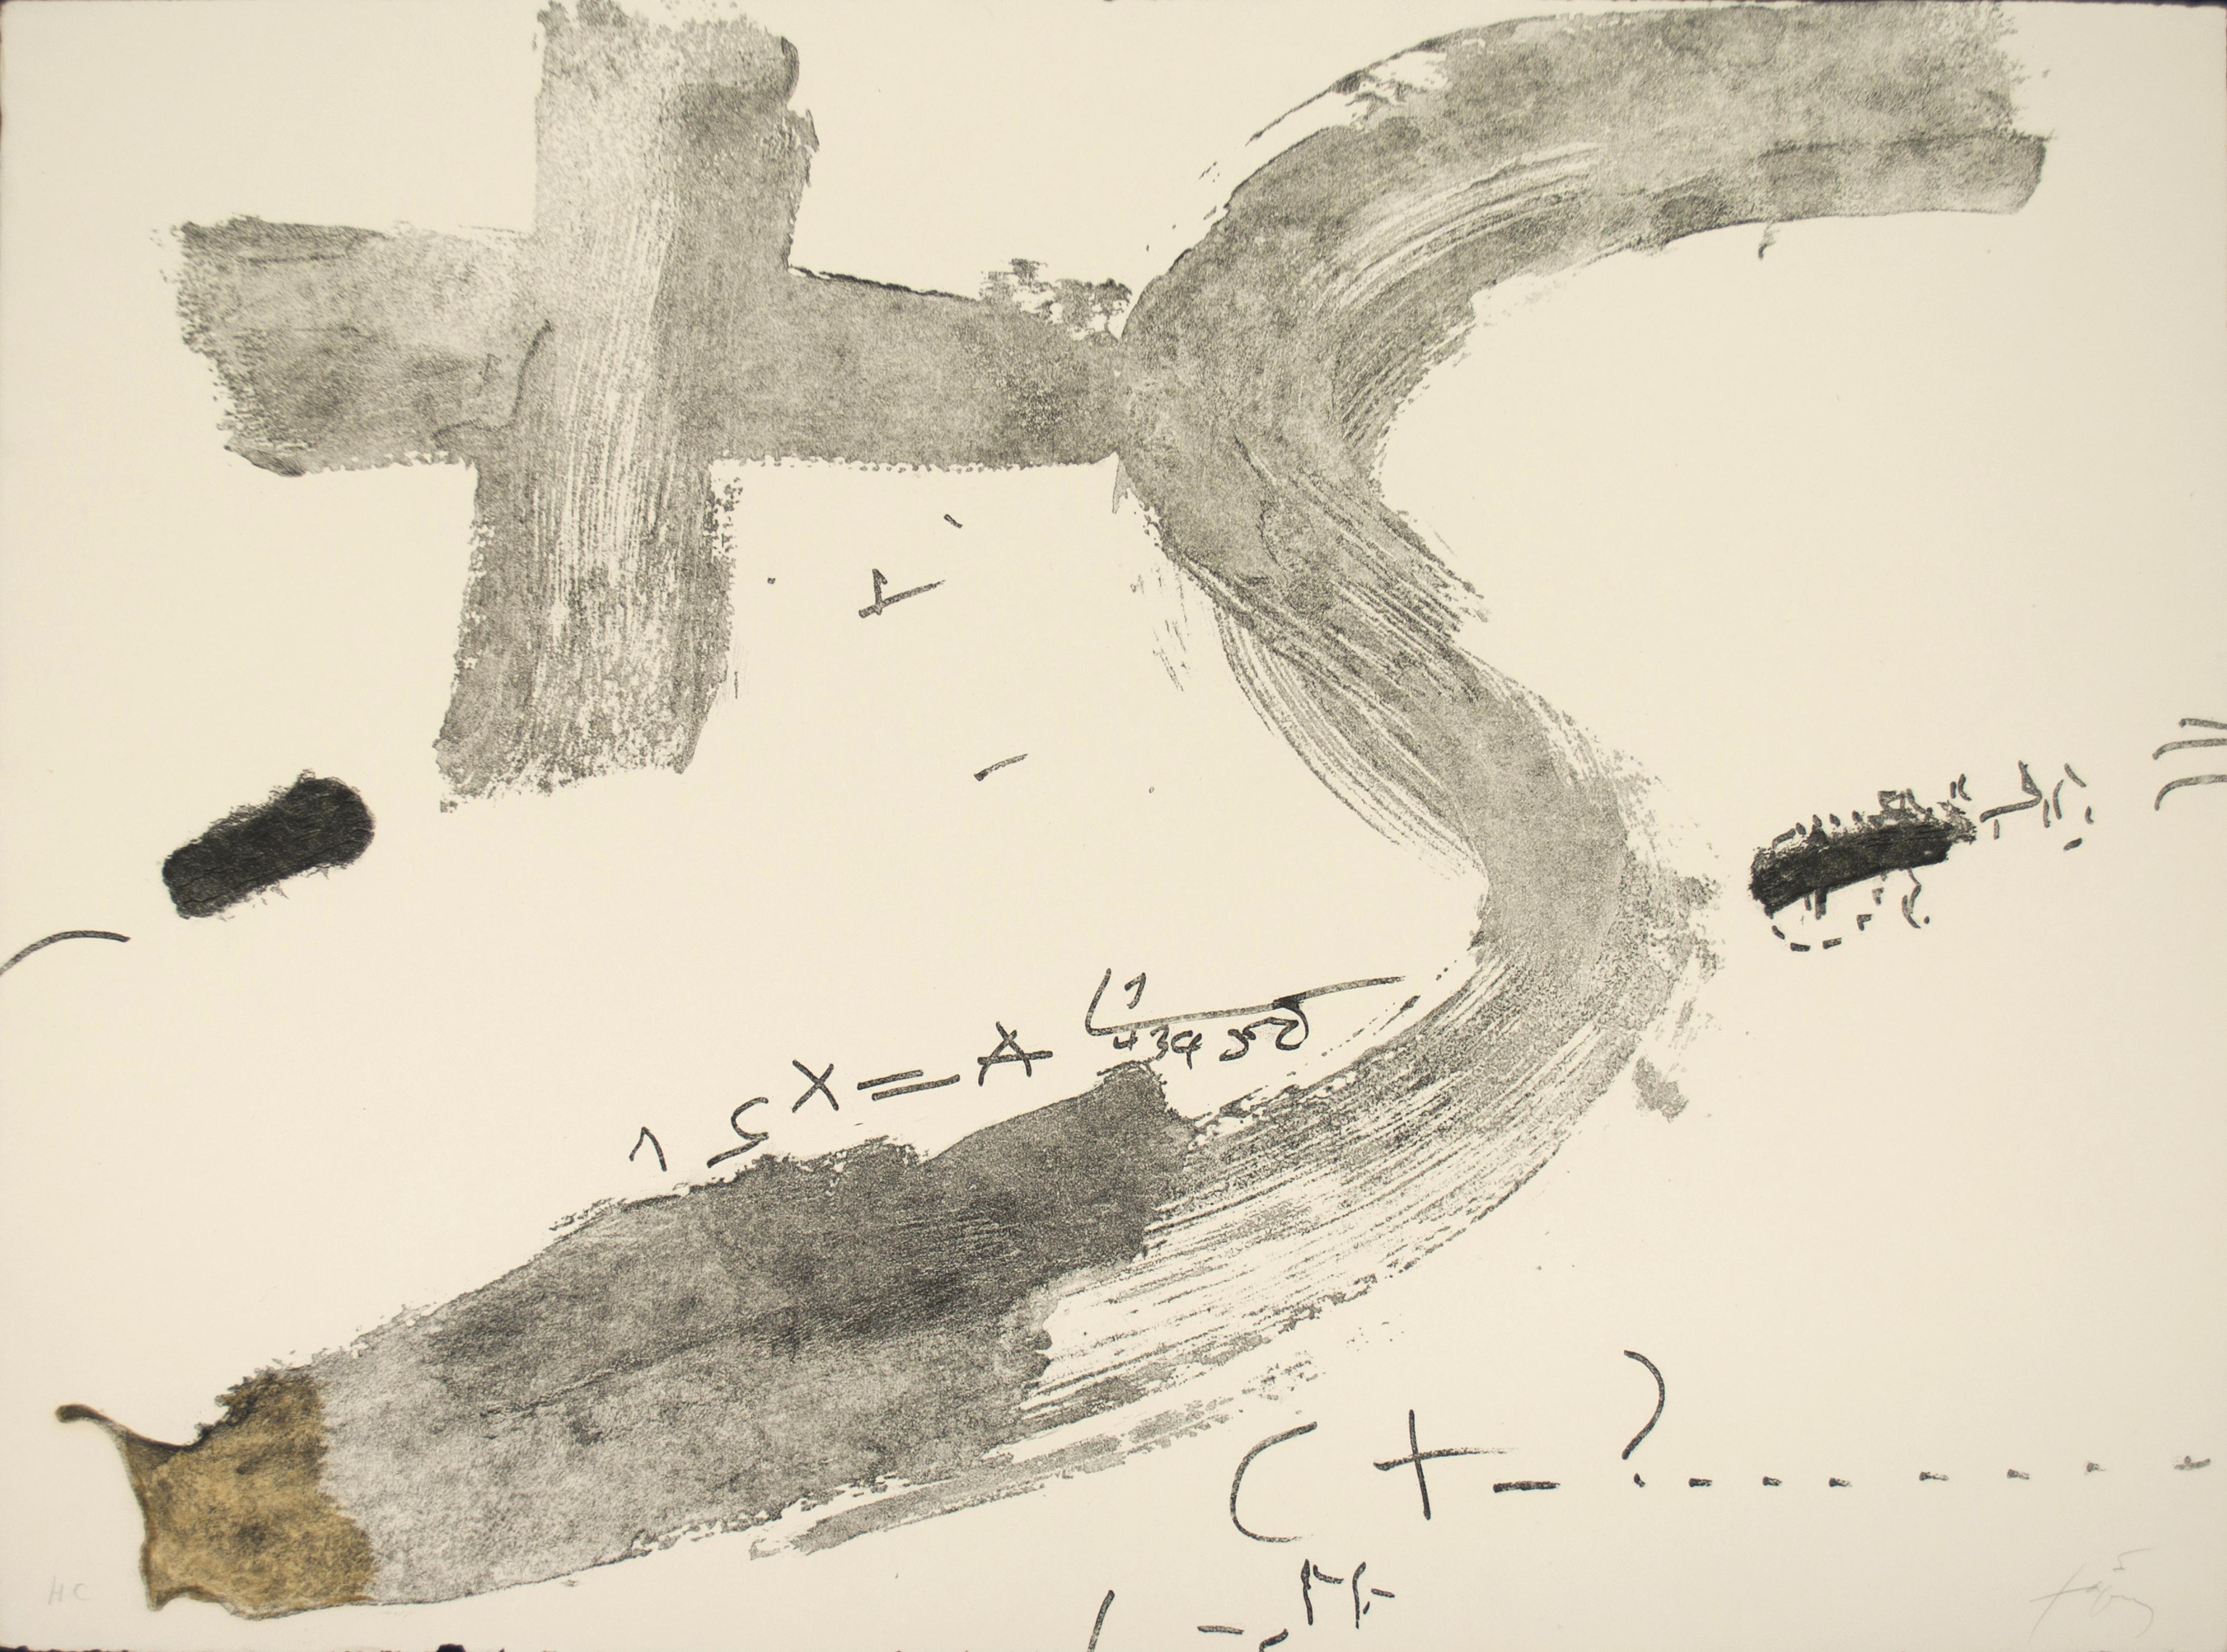 Antoni Tàpies Abstract Print - Creu i S